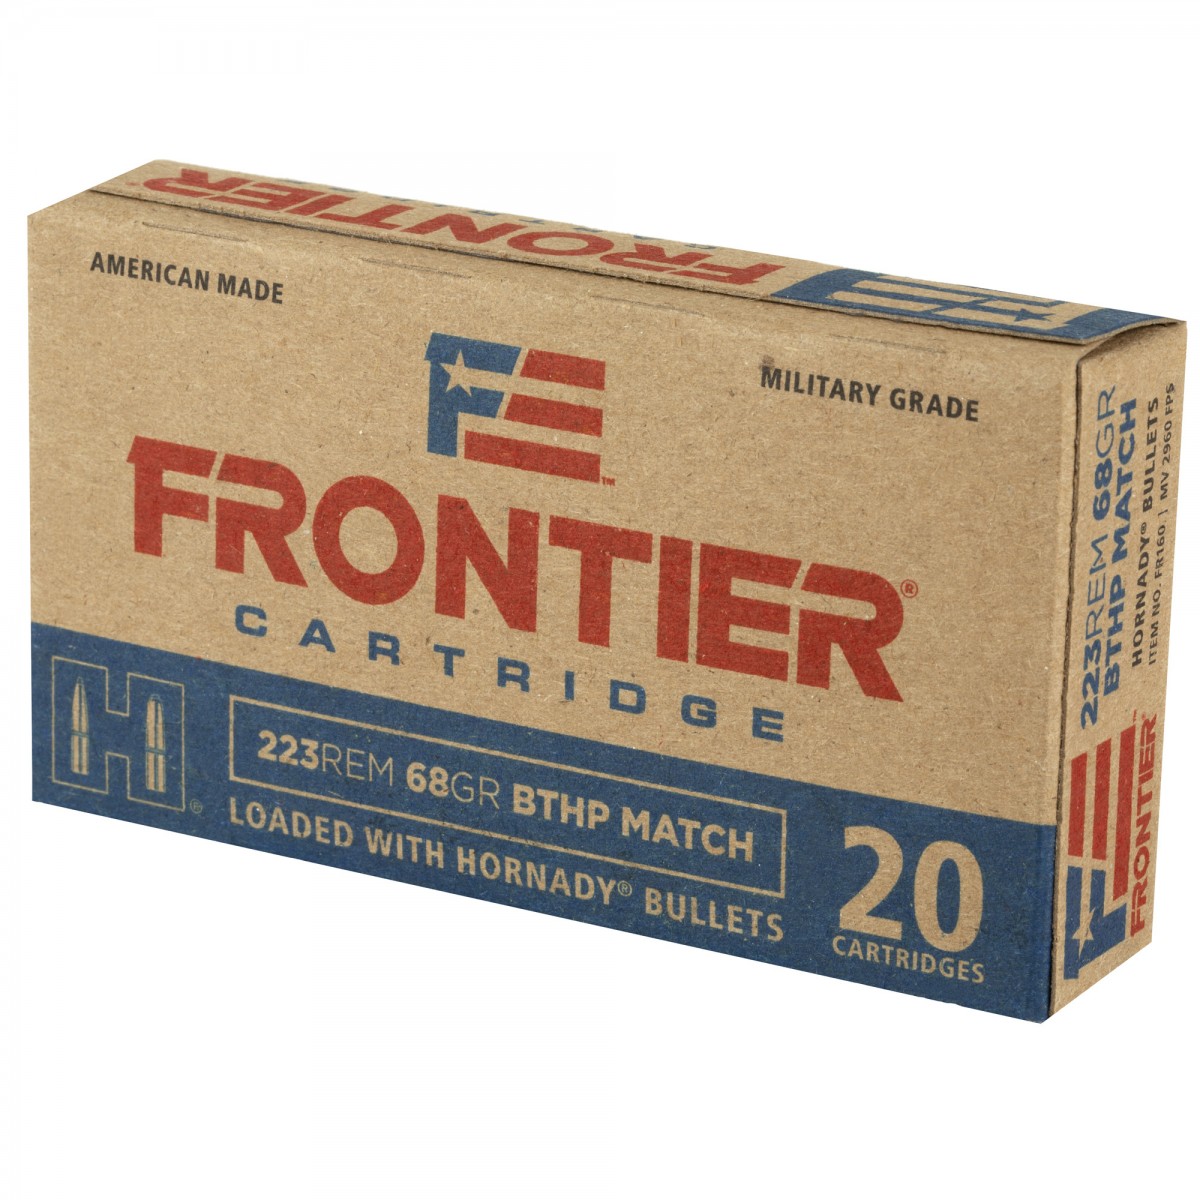 Hornady Frontier Cartridge .223 Remington Ammo 68gr BTHP Match 20 Rounds